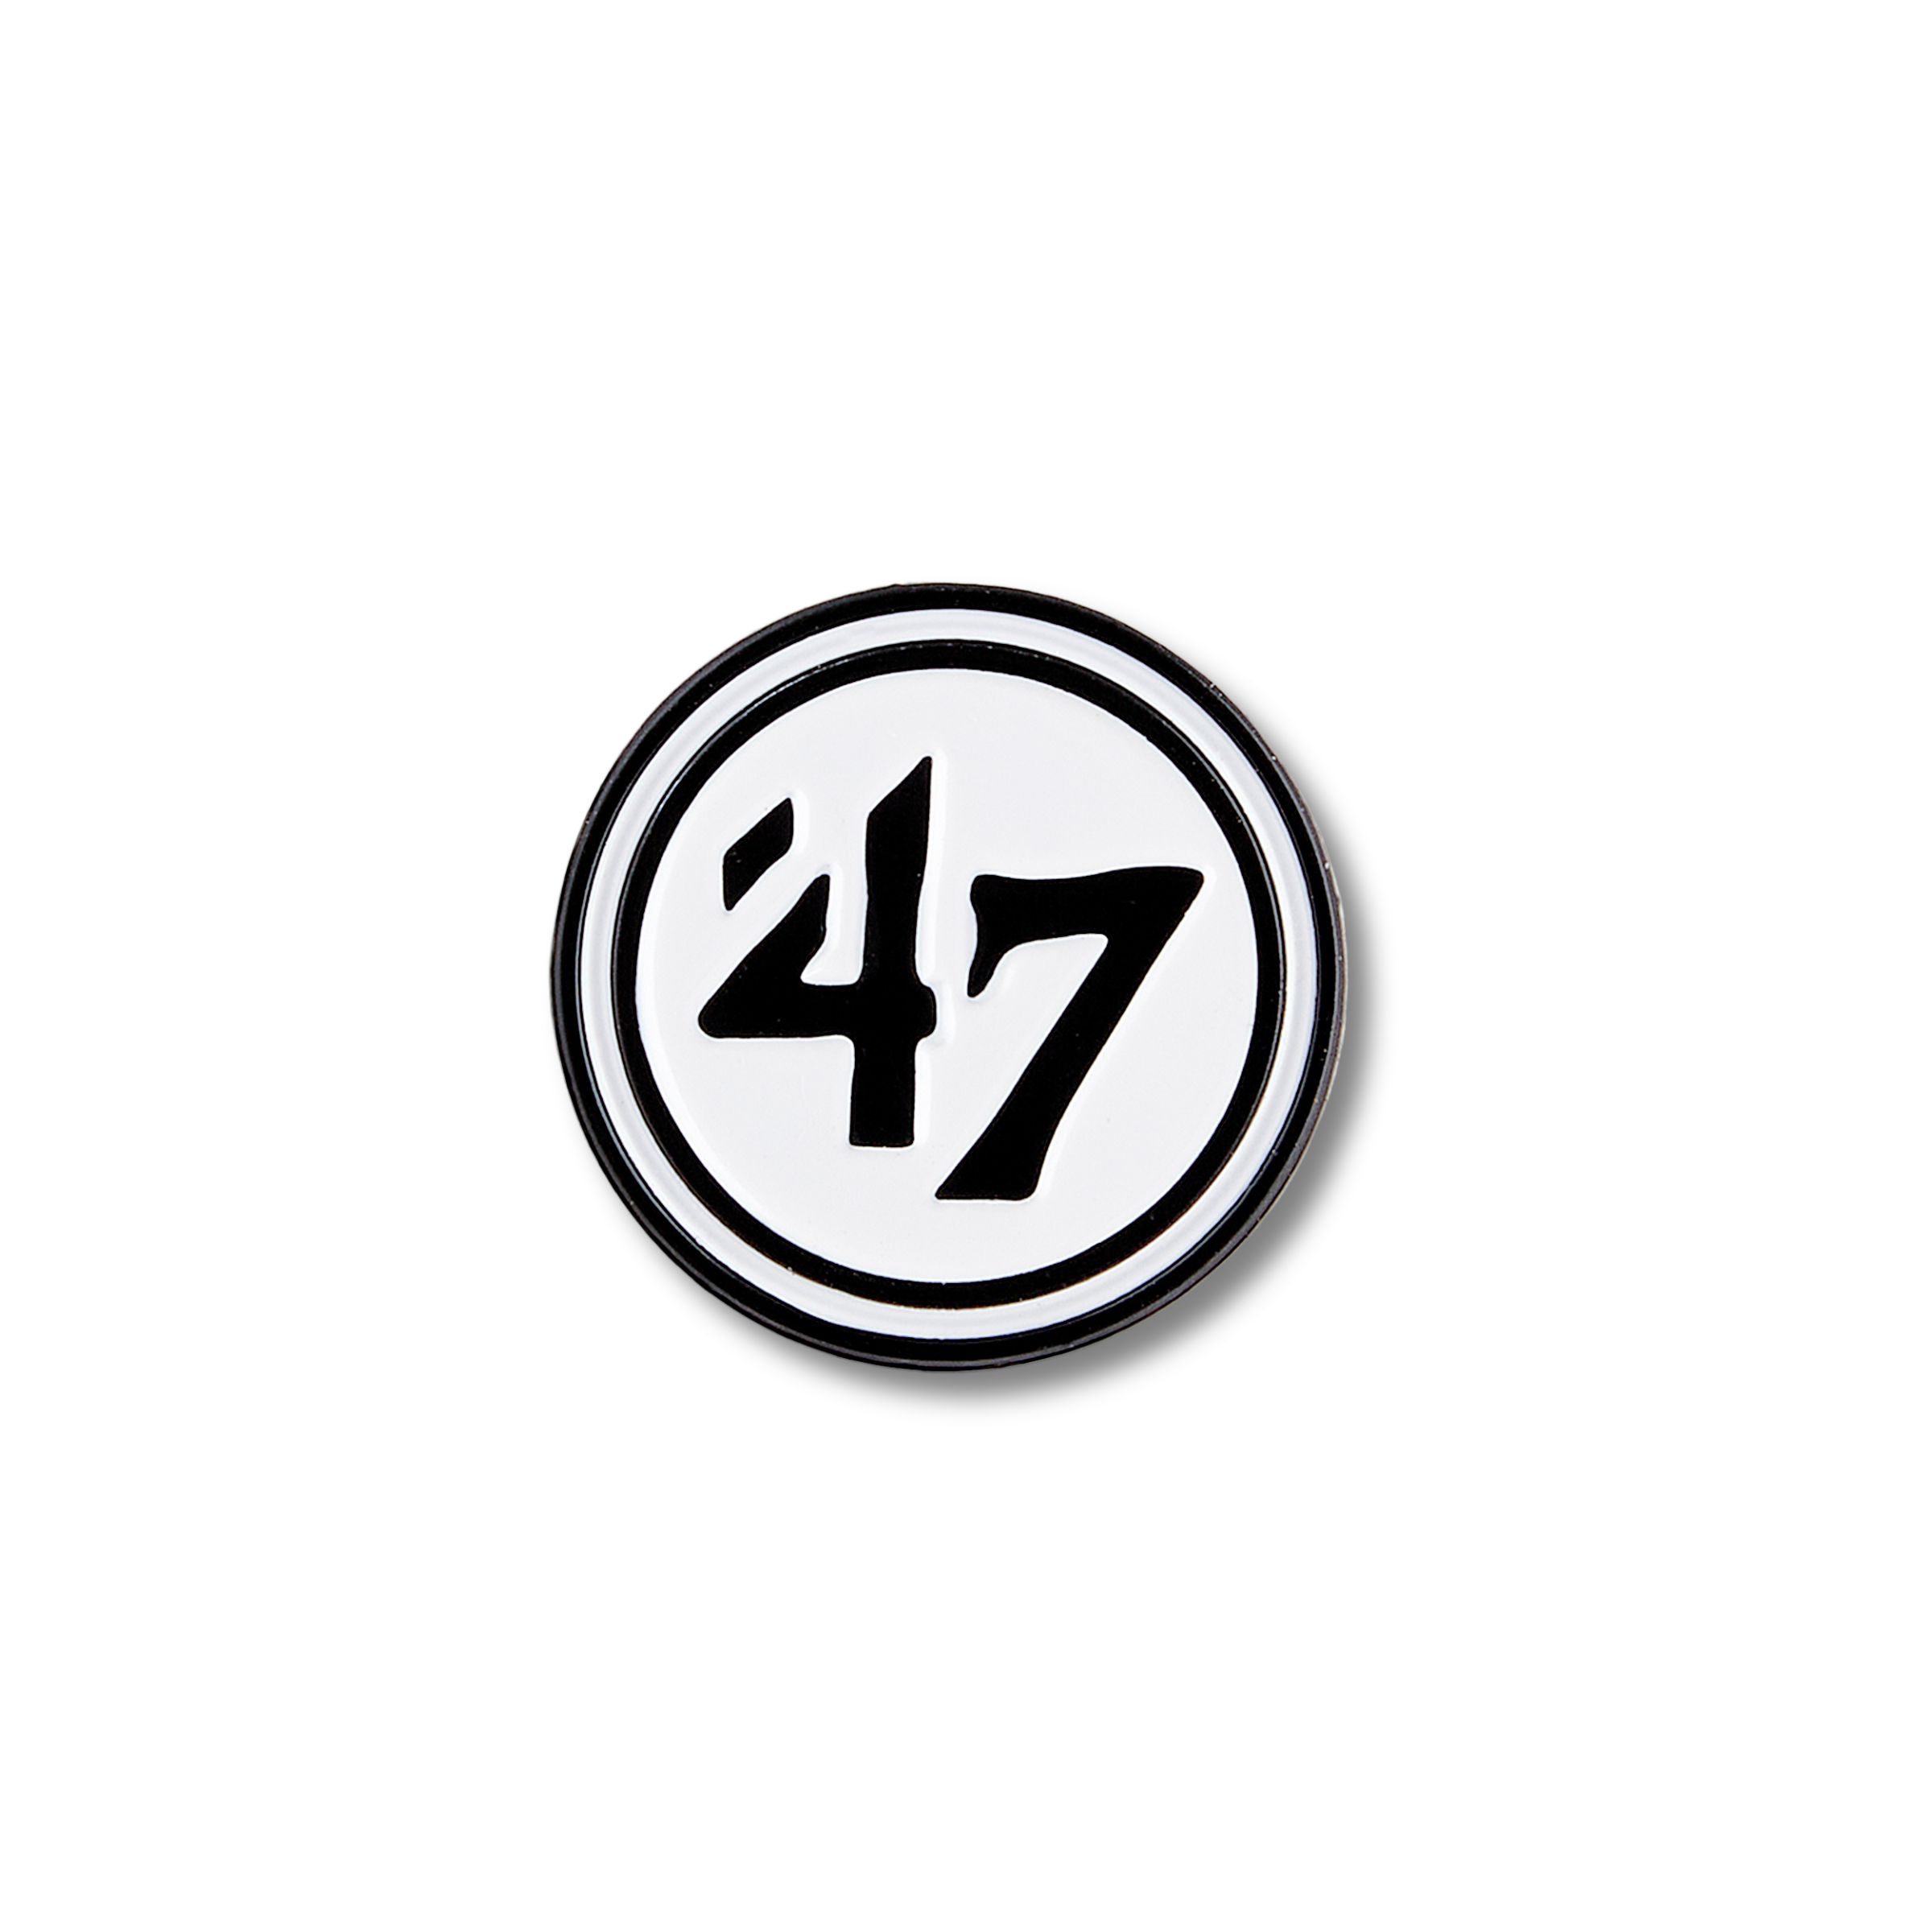 '47 Logo Pin's